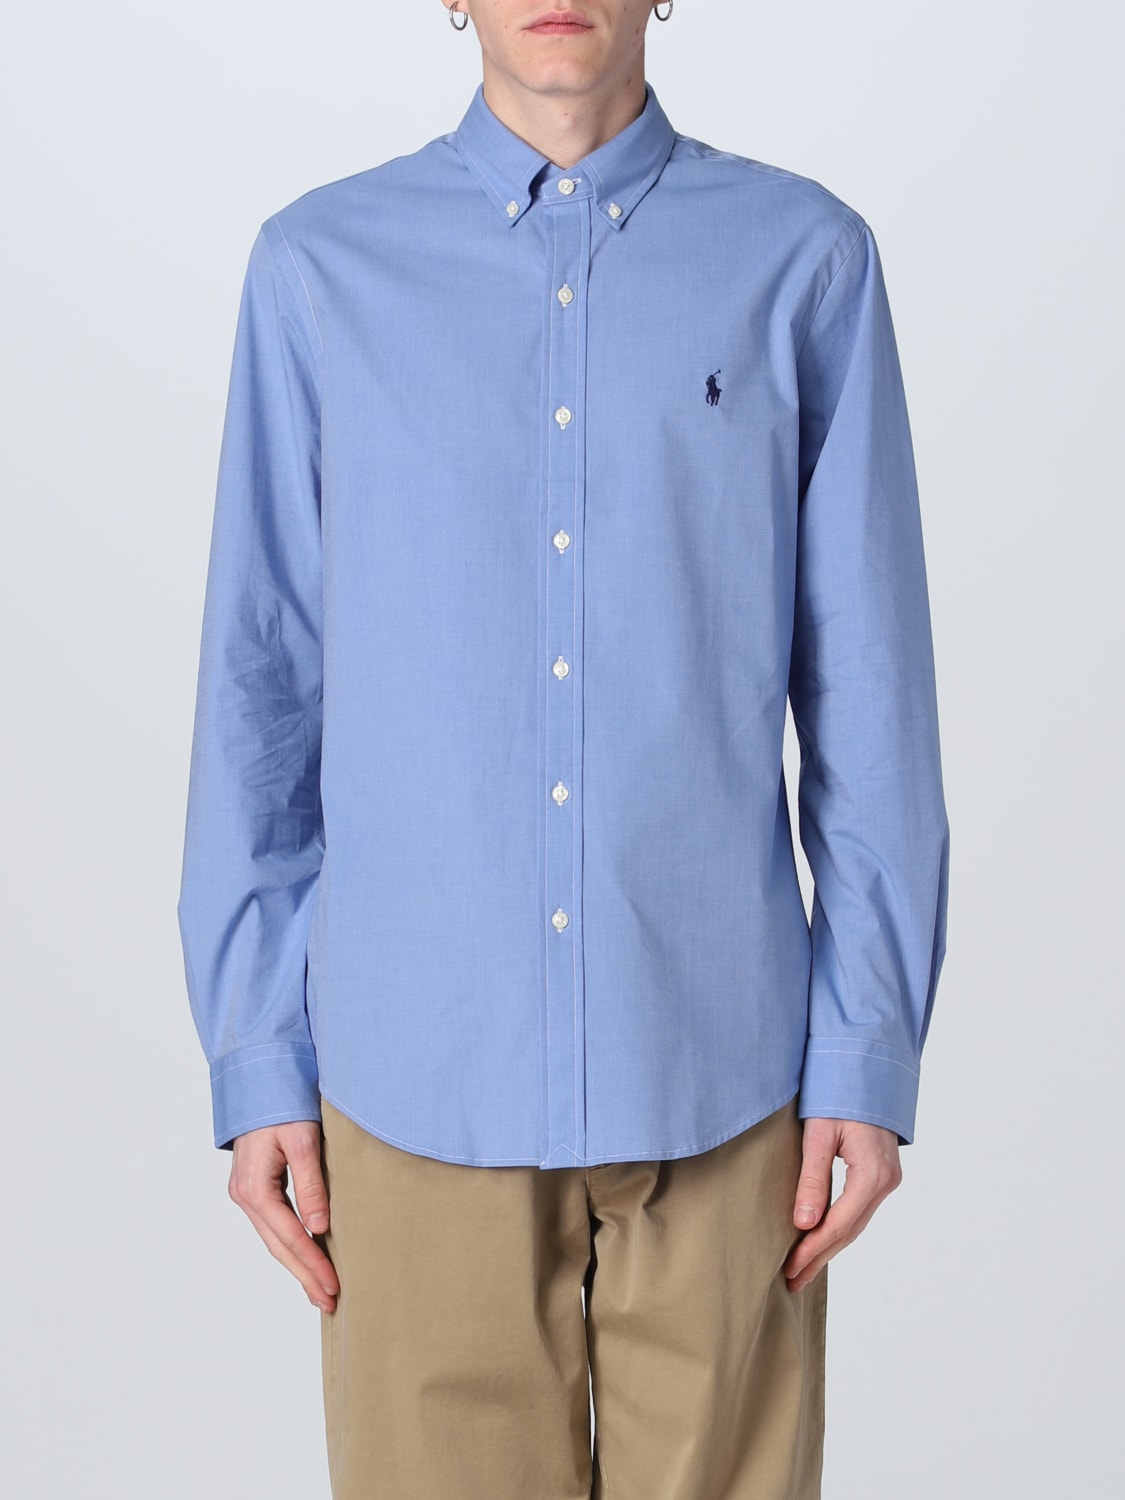 POLO RALPH LAUREN: Camisa hombre, Azul Oscuro 1 | Camisa Polo Ralph Lauren 710832480 en línea en GIGLIO.COM